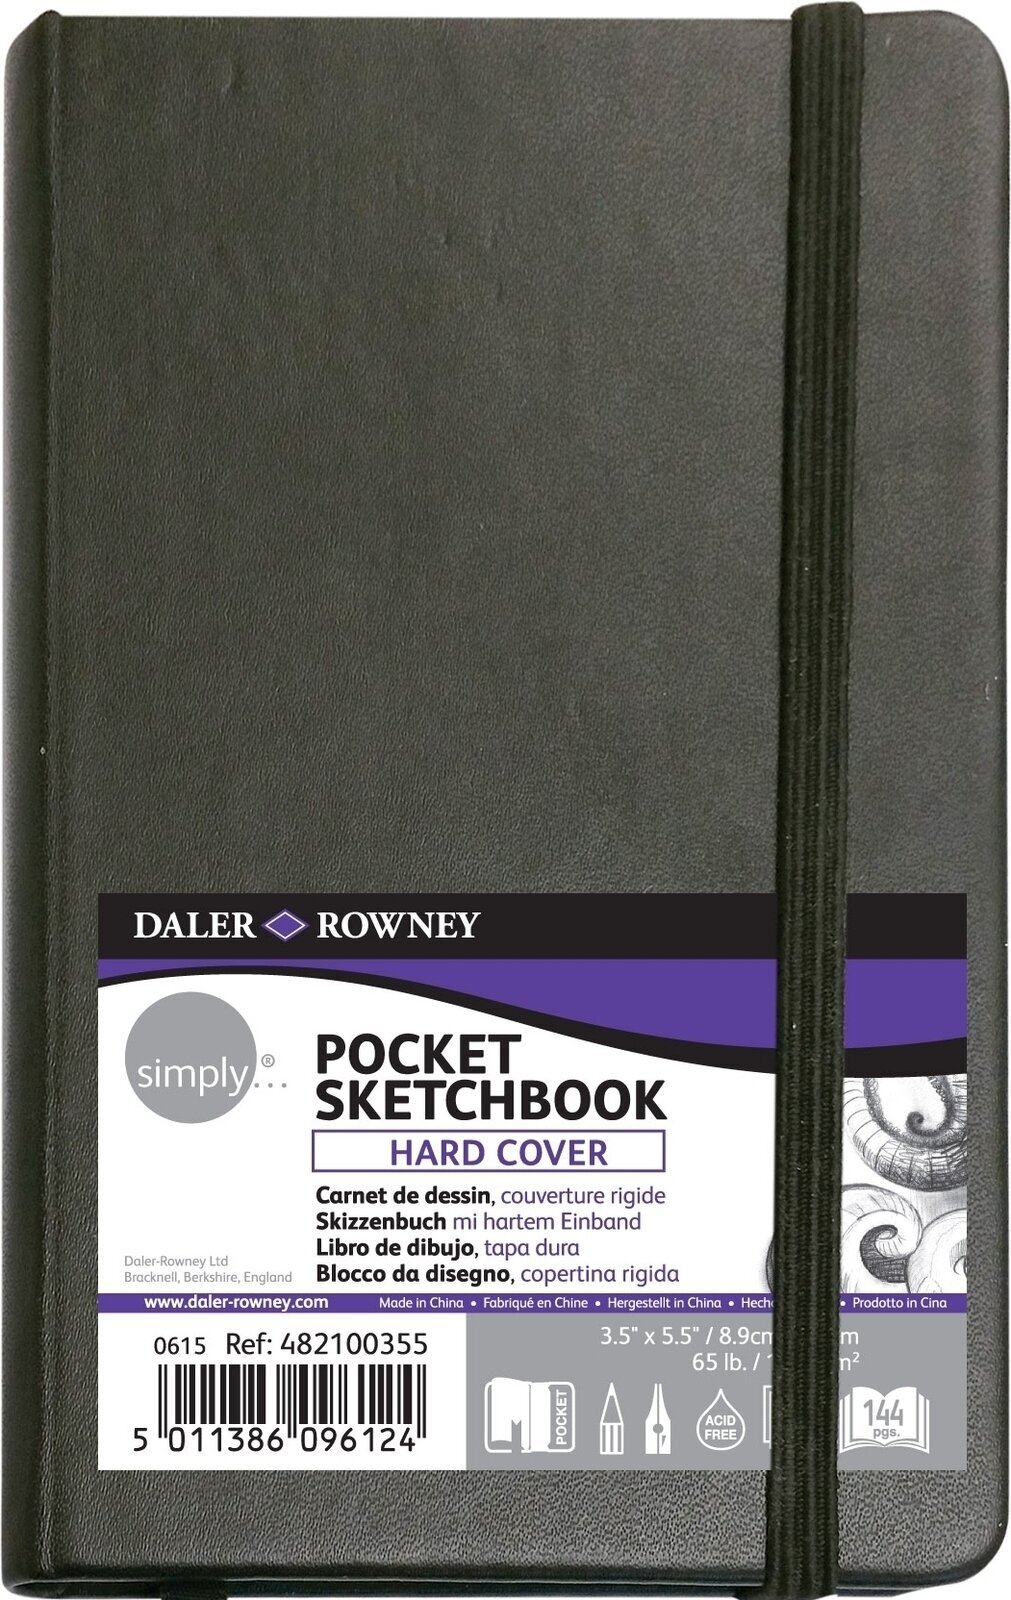 Vázlattömb Daler Rowney Simply Sketchbook Simply 8,9 x 14 cm 100 g Black Vázlattömb